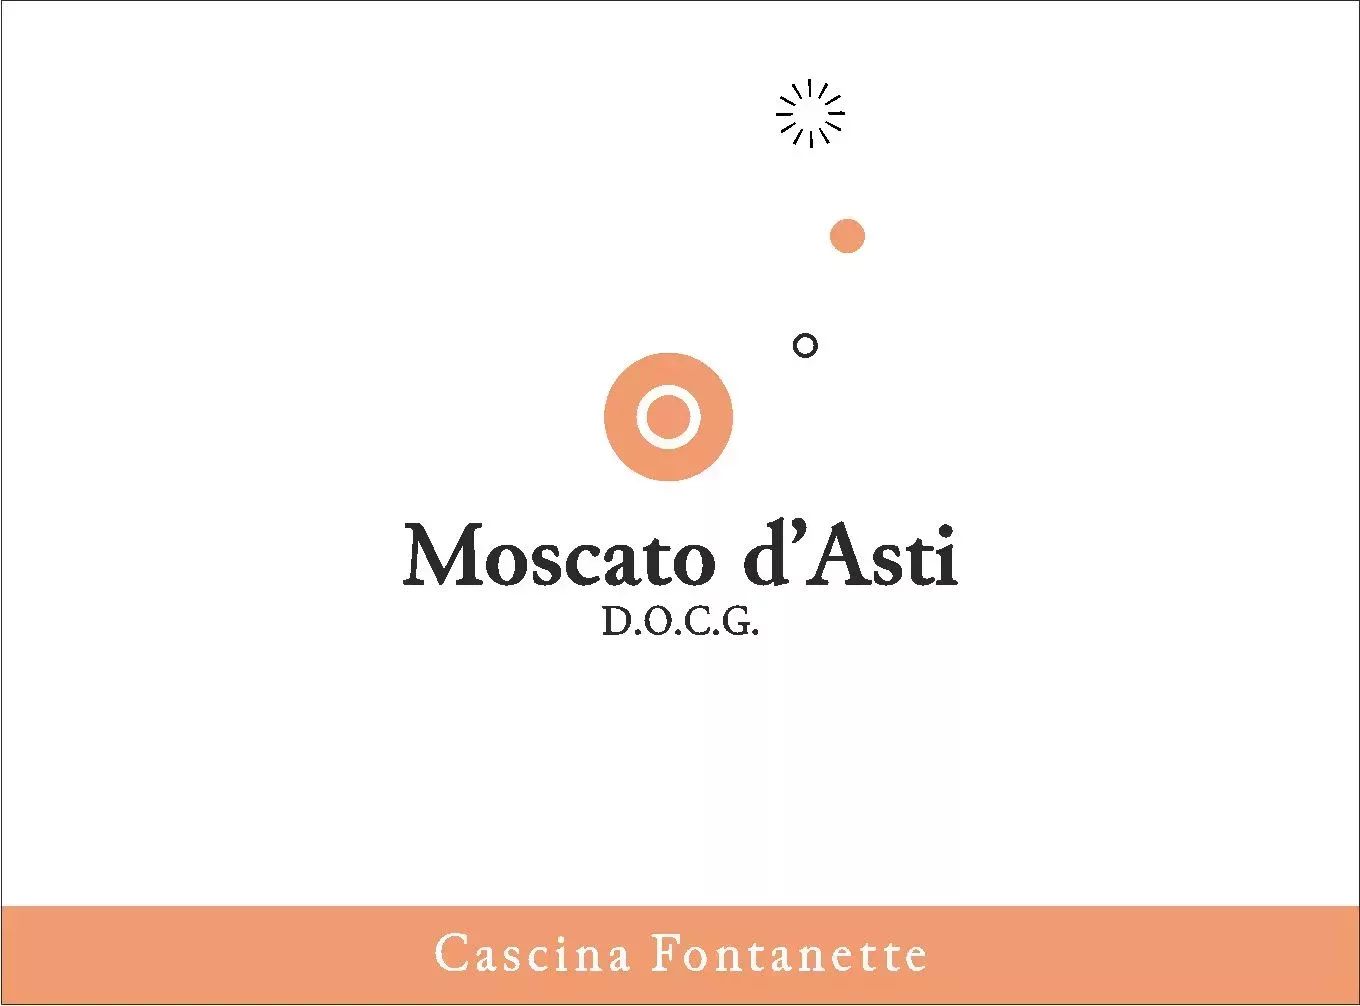 Moscato d'Asti DOCG - Cascina Fontanette (label)